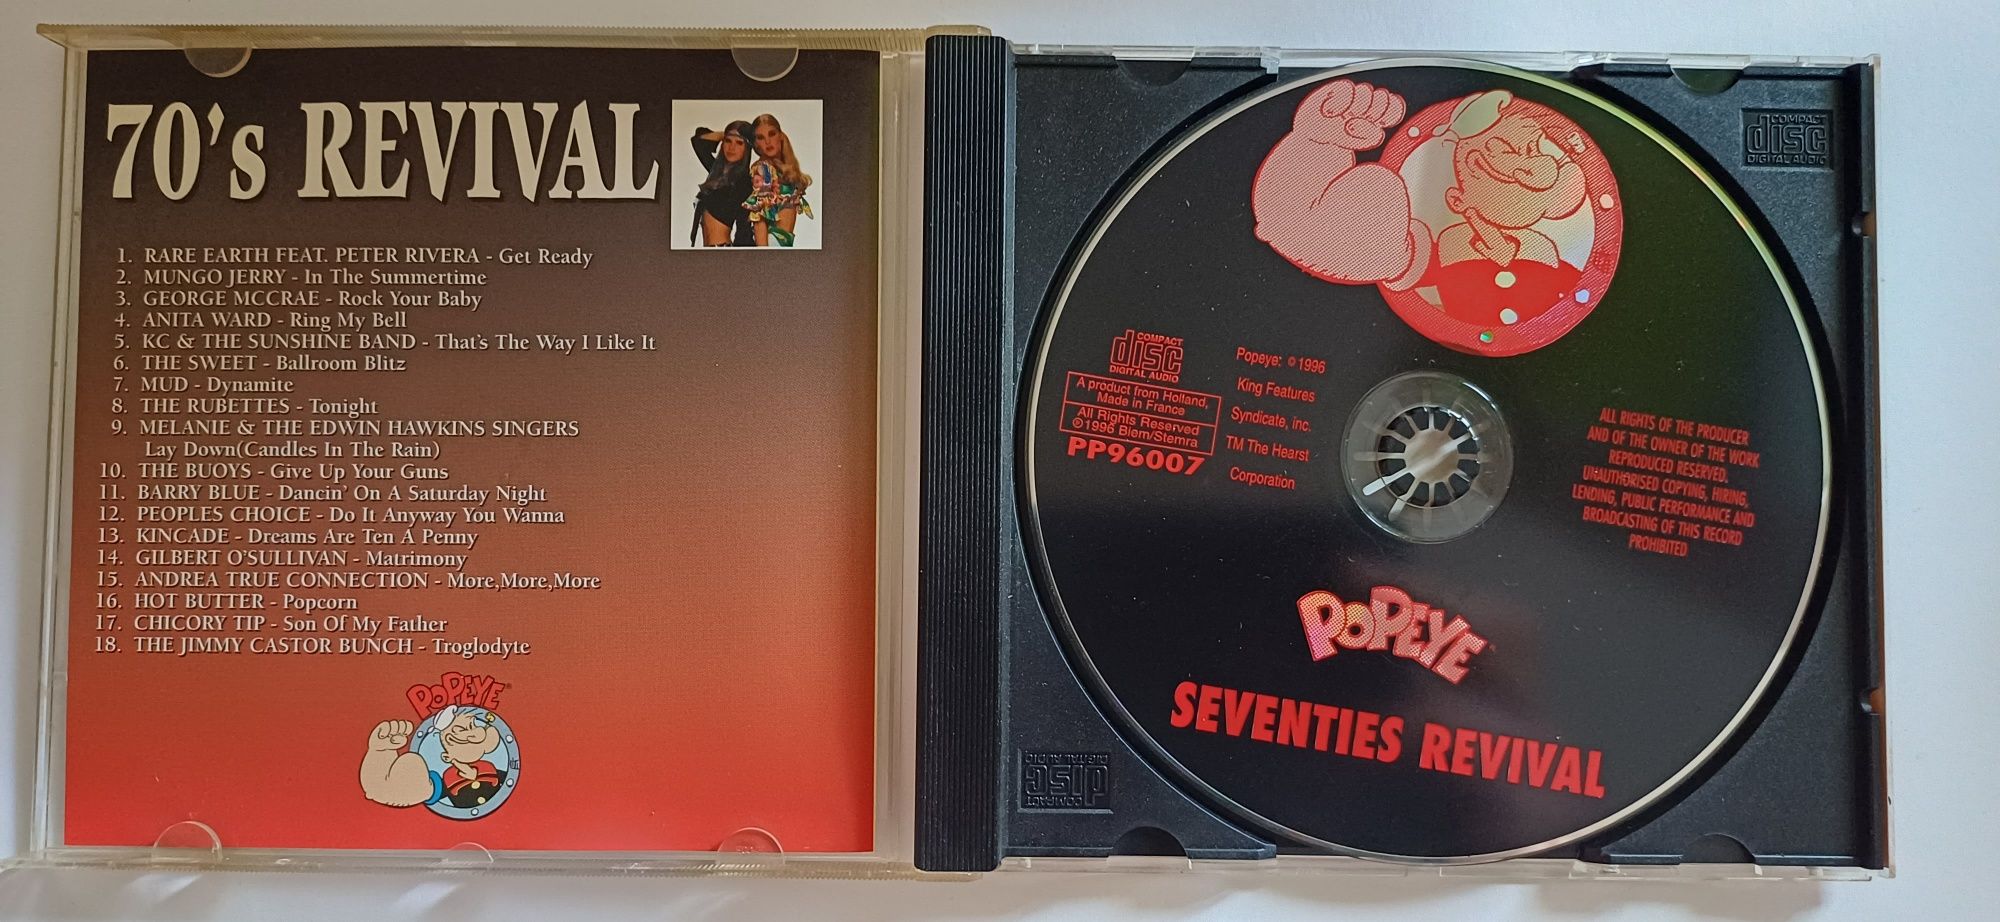 70's Revival POPEYE RECORDS * CD